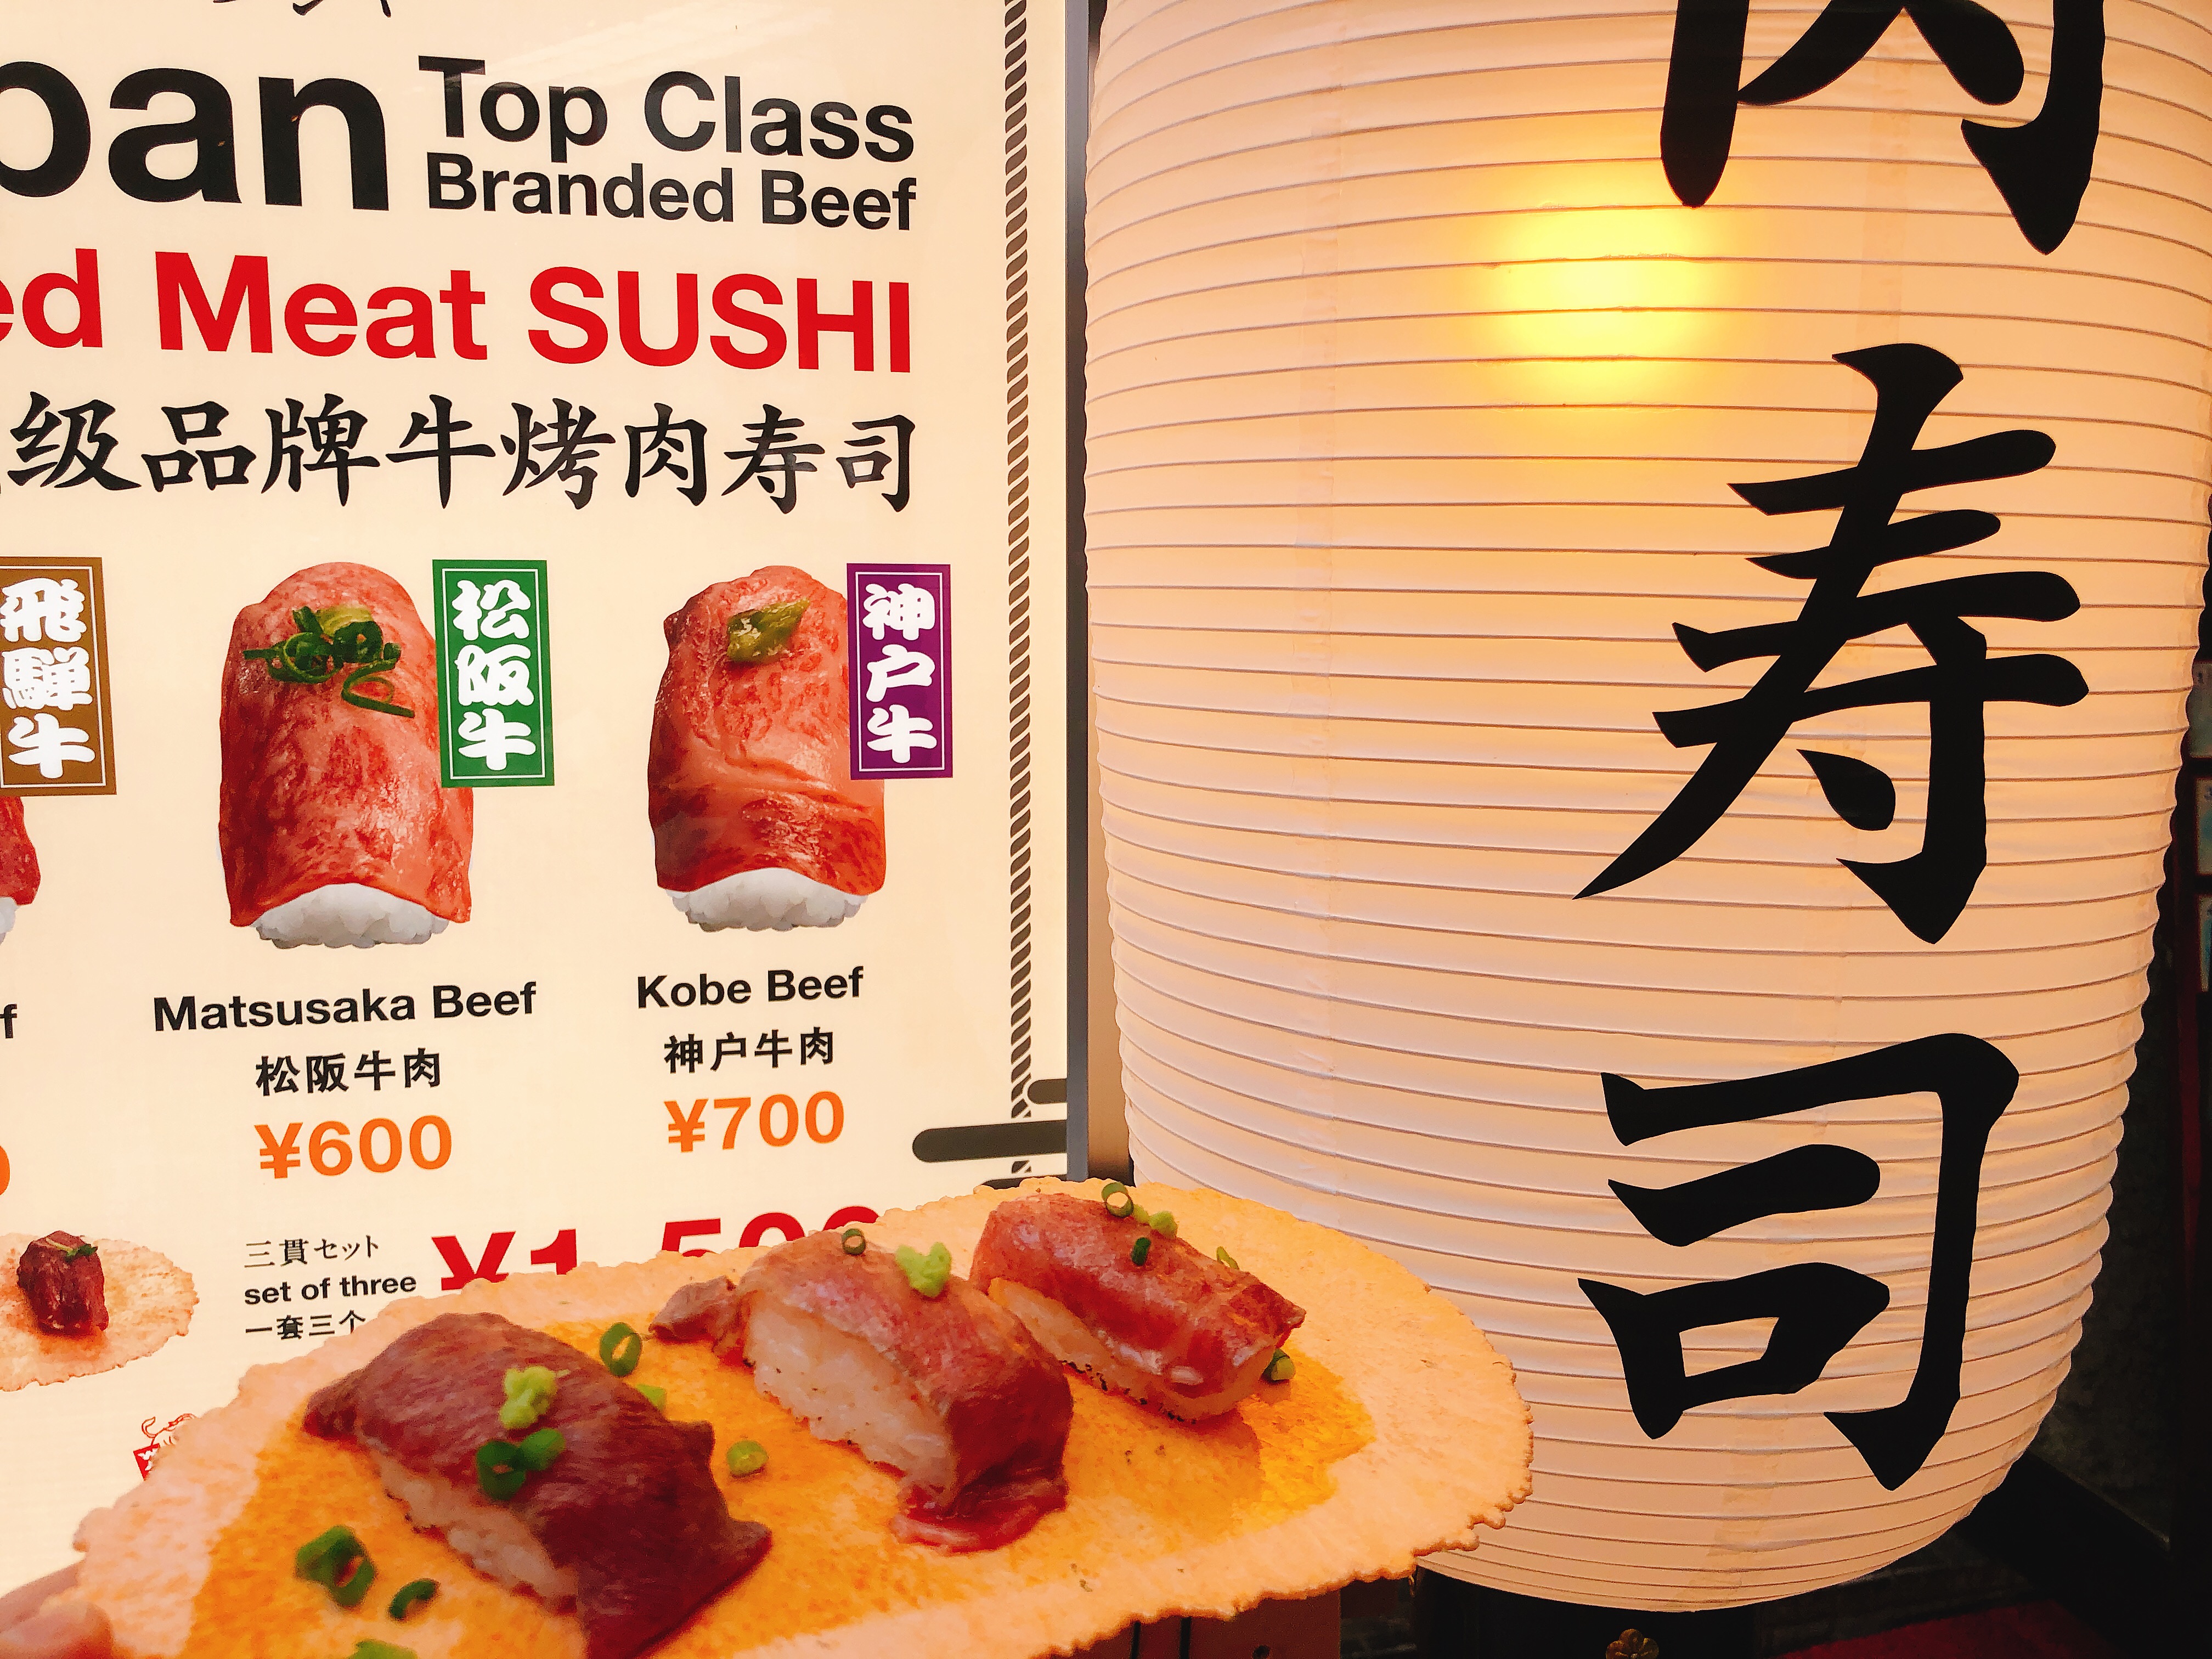 名古屋大須肉寿司わぶりの3種類の上品な肉寿司を食べ比べ 名古屋グルメ ぱるとよ